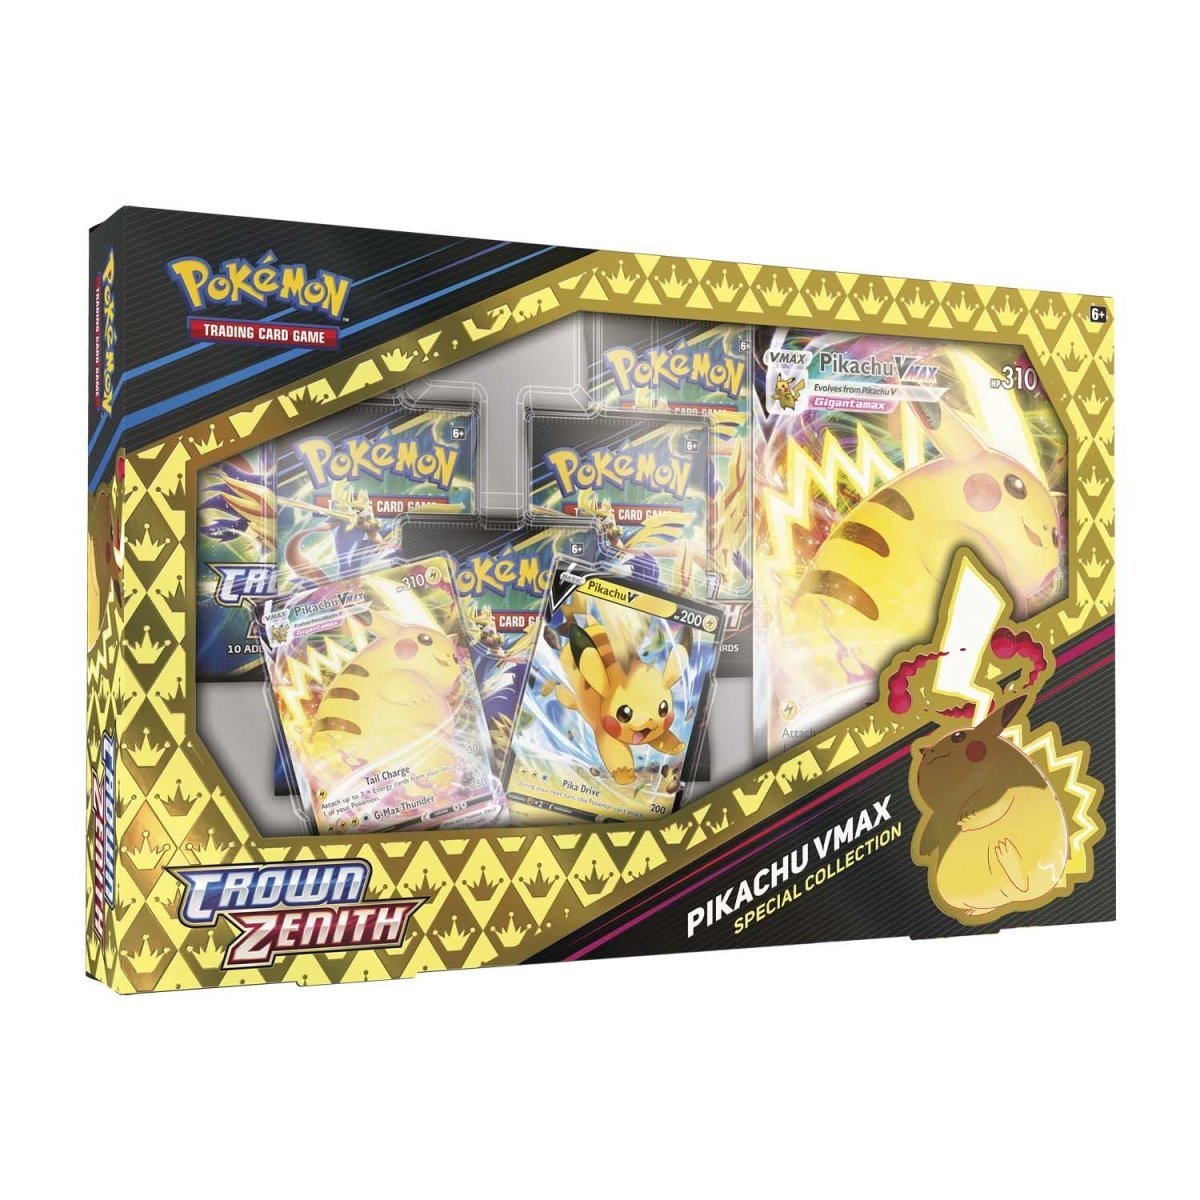 Pokémon TCG: Crown Zenith Pikachu VMAX Special Collection - PokeRvmCollection Box